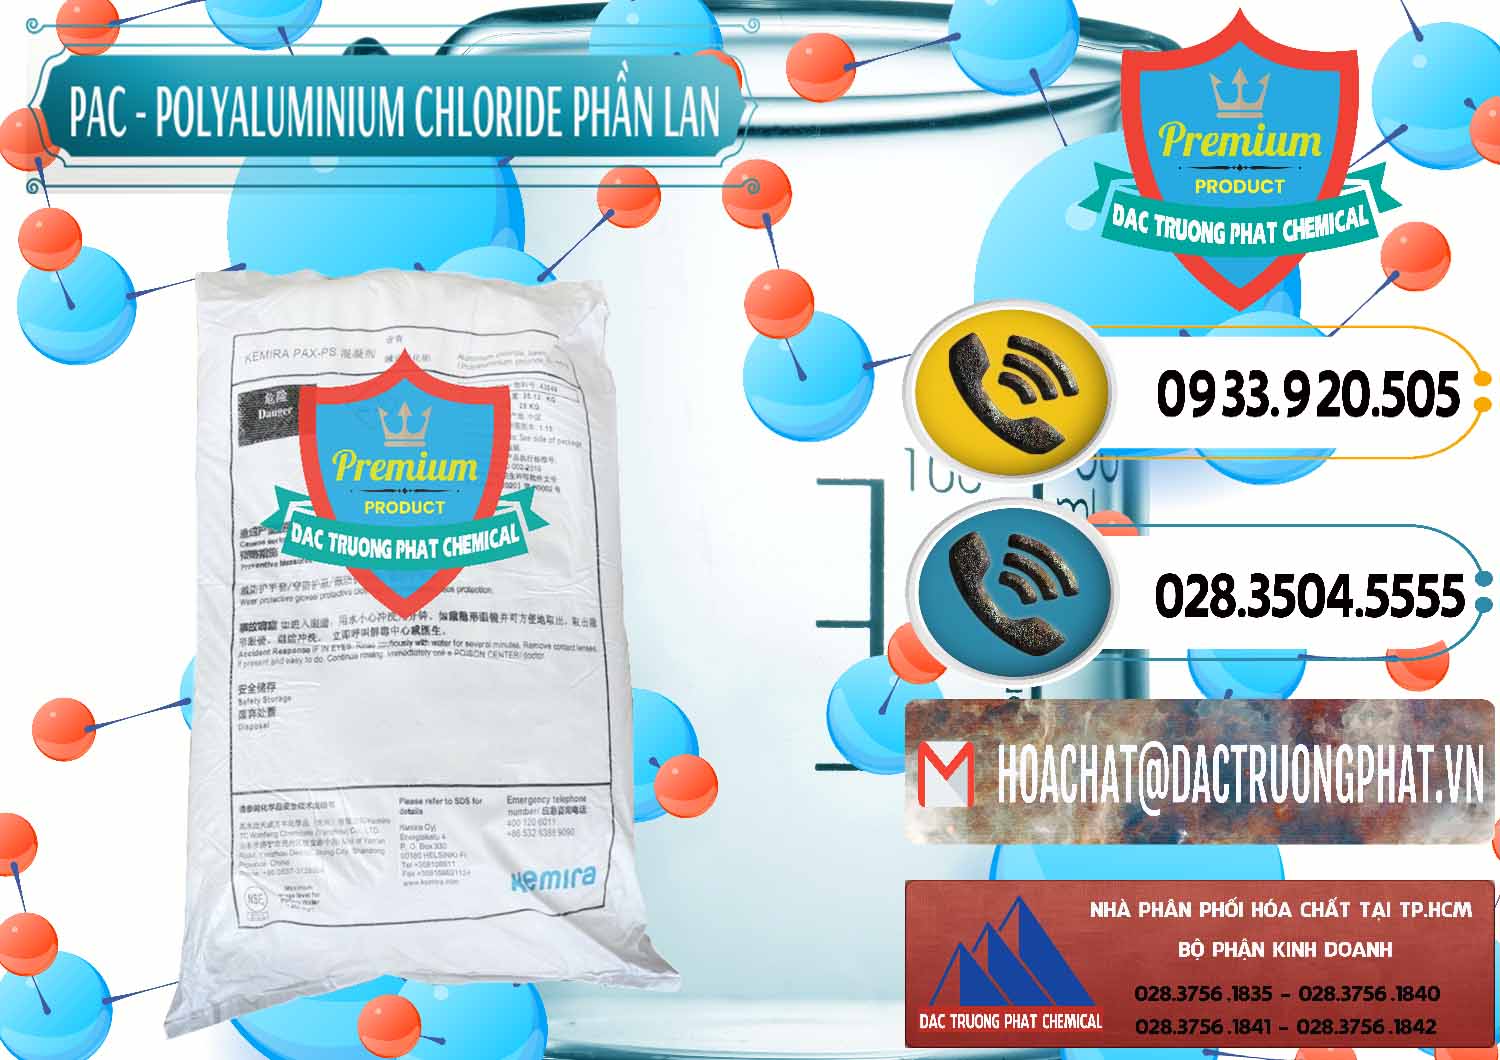 Đơn vị nhập khẩu - bán PAC - Polyaluminium Chloride Phần Lan Finland - 0383 - Chuyên cung cấp _ kinh doanh hóa chất tại TP.HCM - hoachatdetnhuom.vn